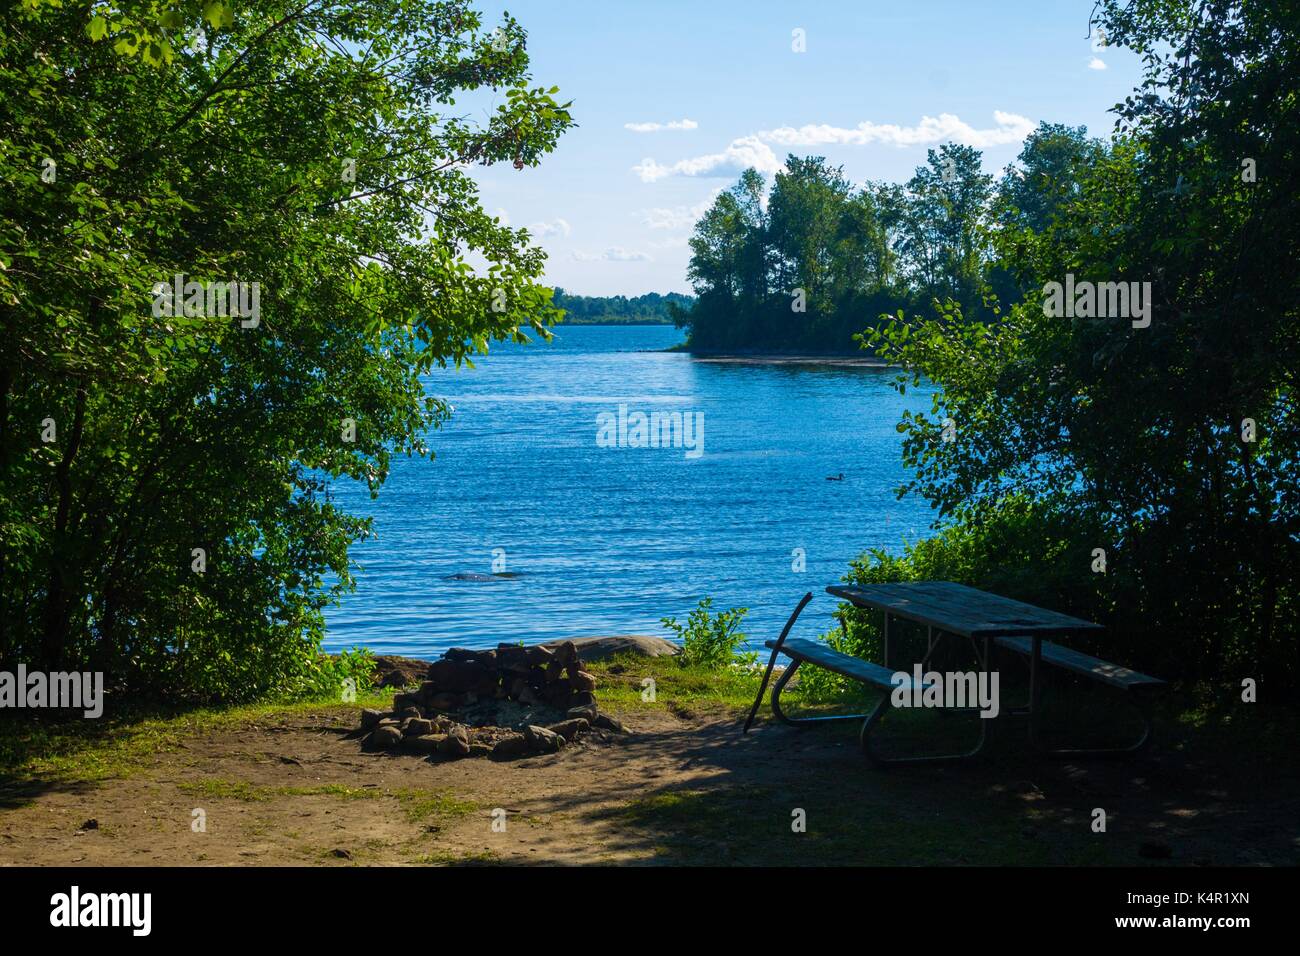 Loon nuotare sul fiume San Lorenzo vicino al campeggio Milles Roches con caminetto, tavolo da picnic e lungomare a Long Sault Ontario Canada Foto Stock